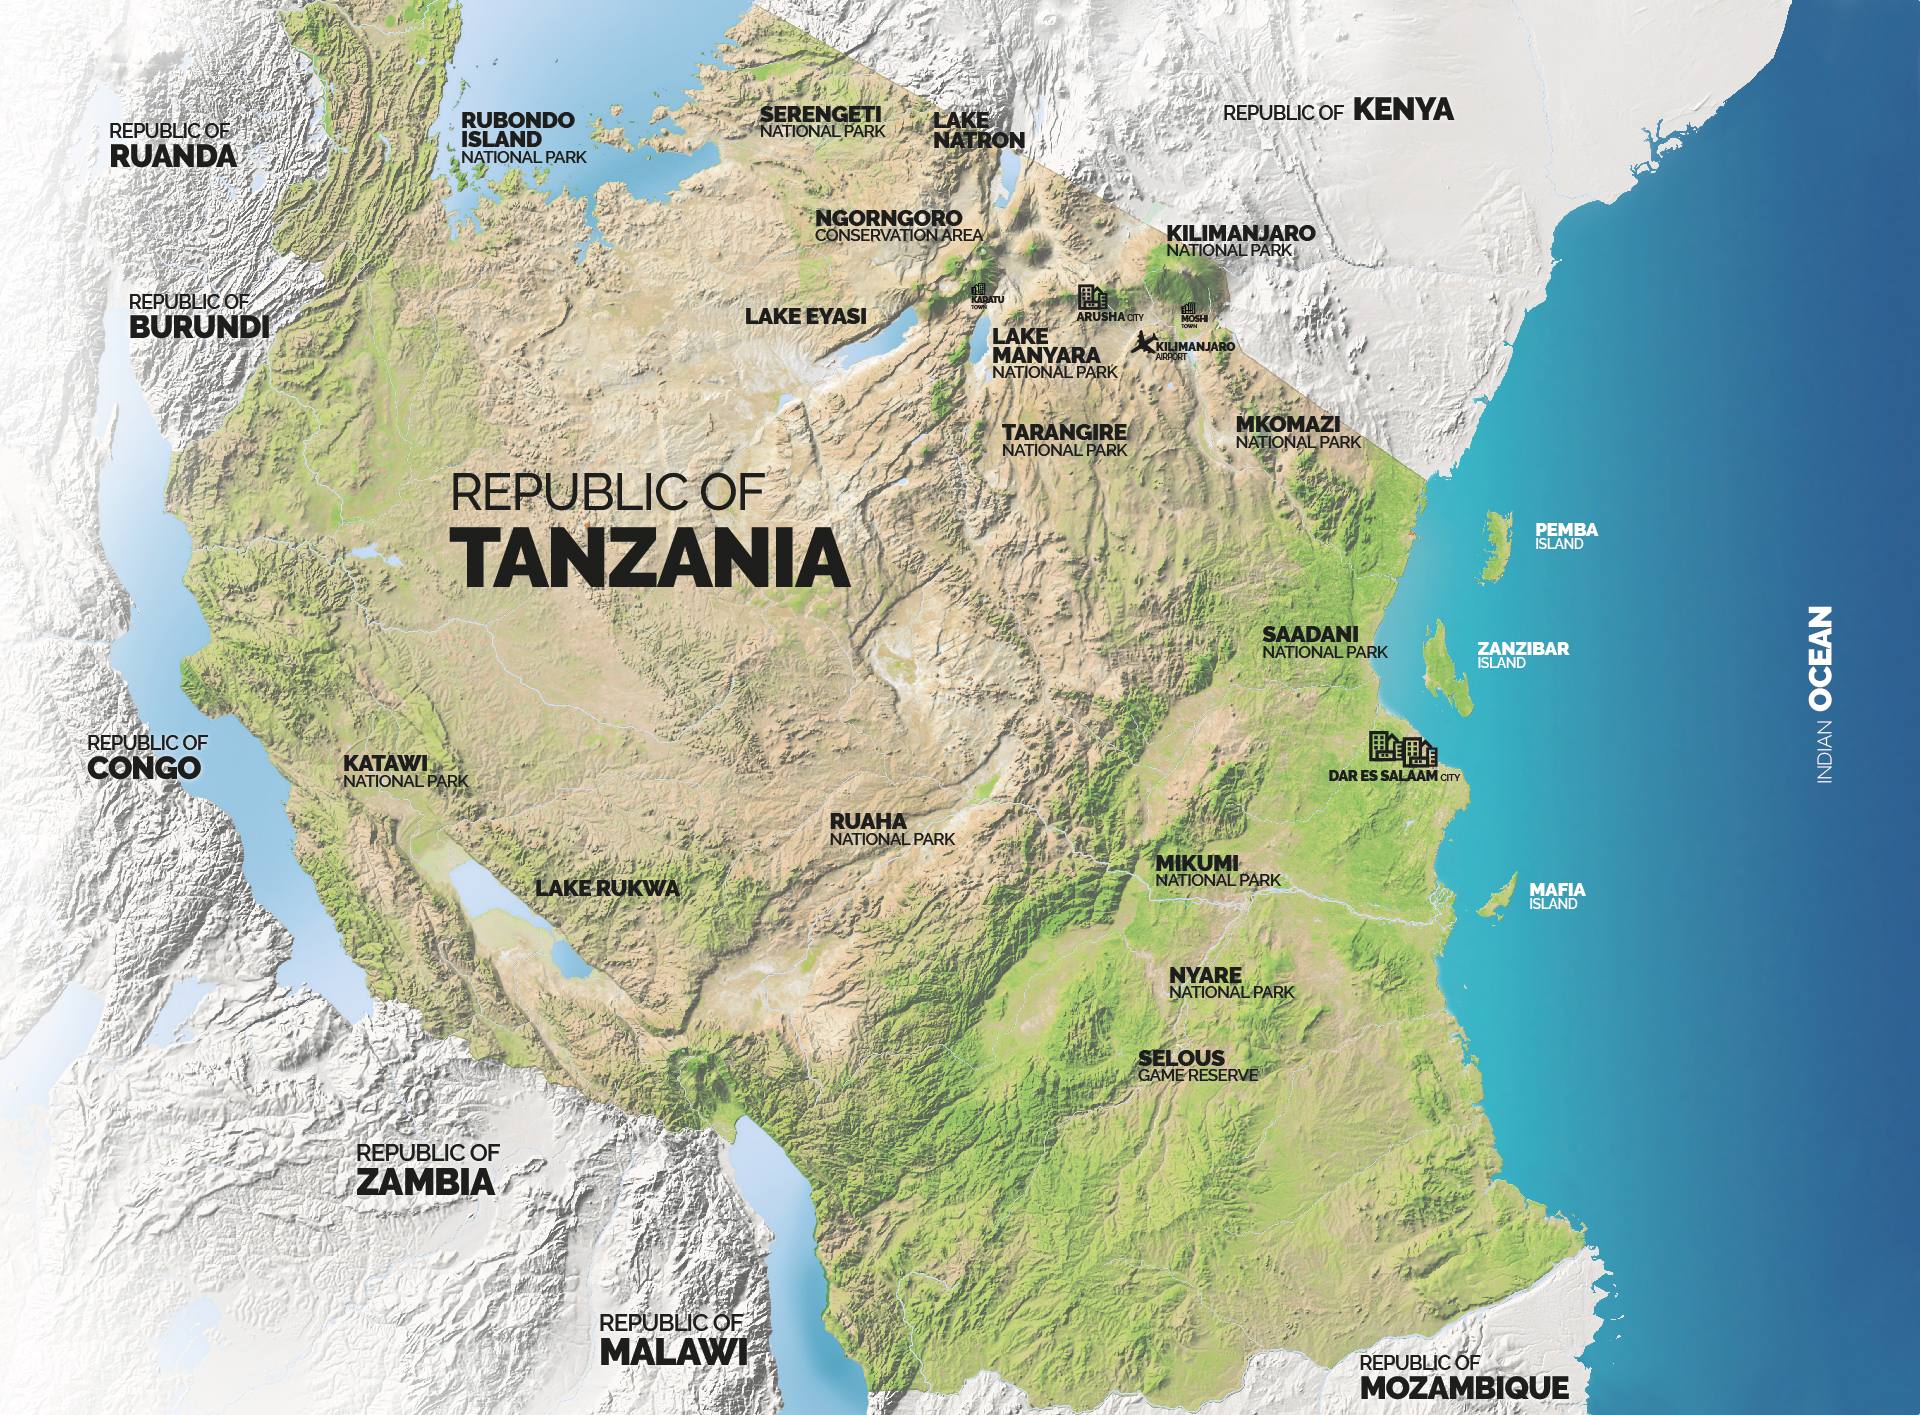 TRACCE DI TANZANIA: PARCHI NAZIONALI, LAGHI e ISOLE